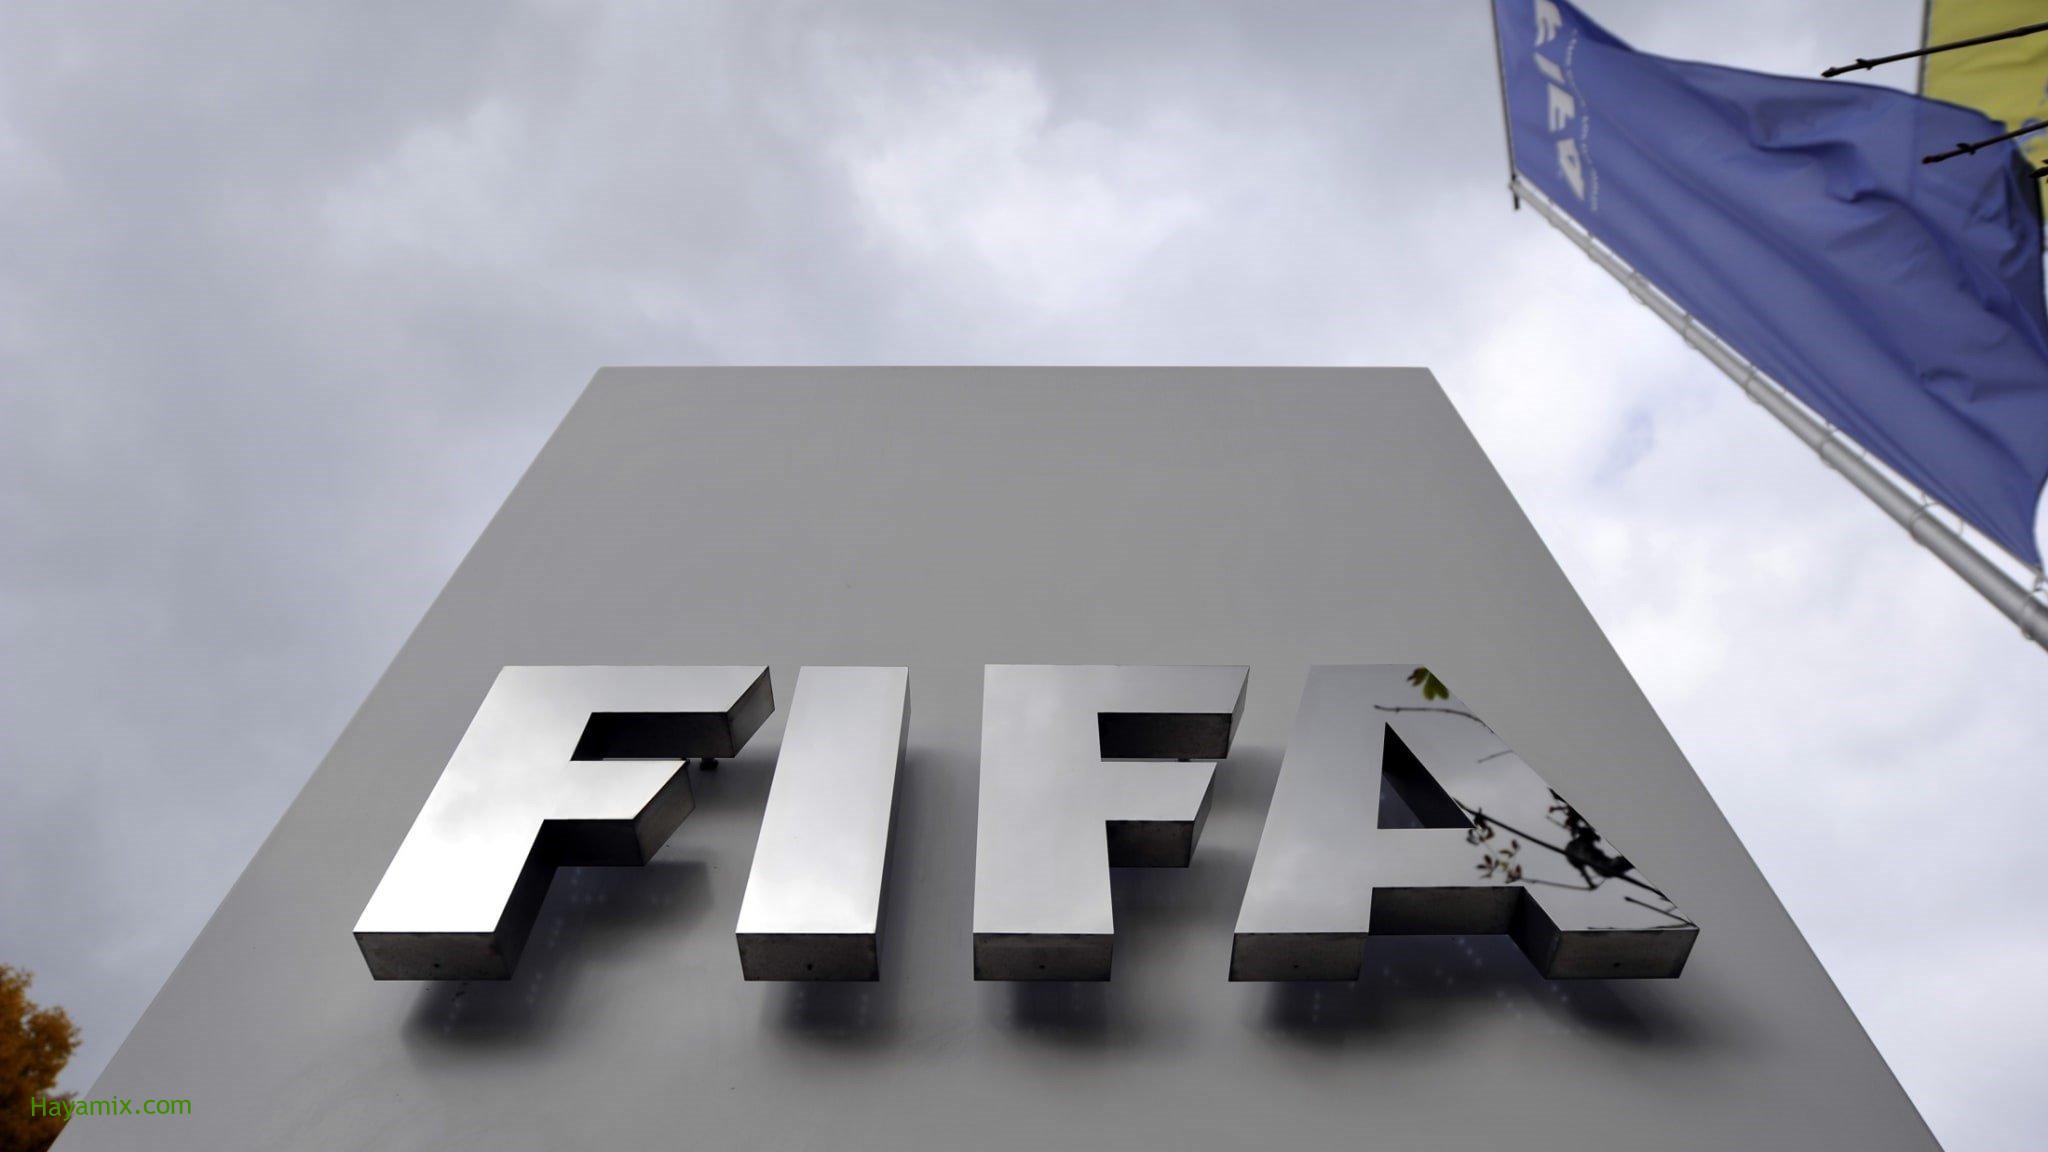 “فيفا” يناقش مقتراحاً تاريخياً من الاتحاد السعودي بشأن إقامة كأس العالم كل عامين